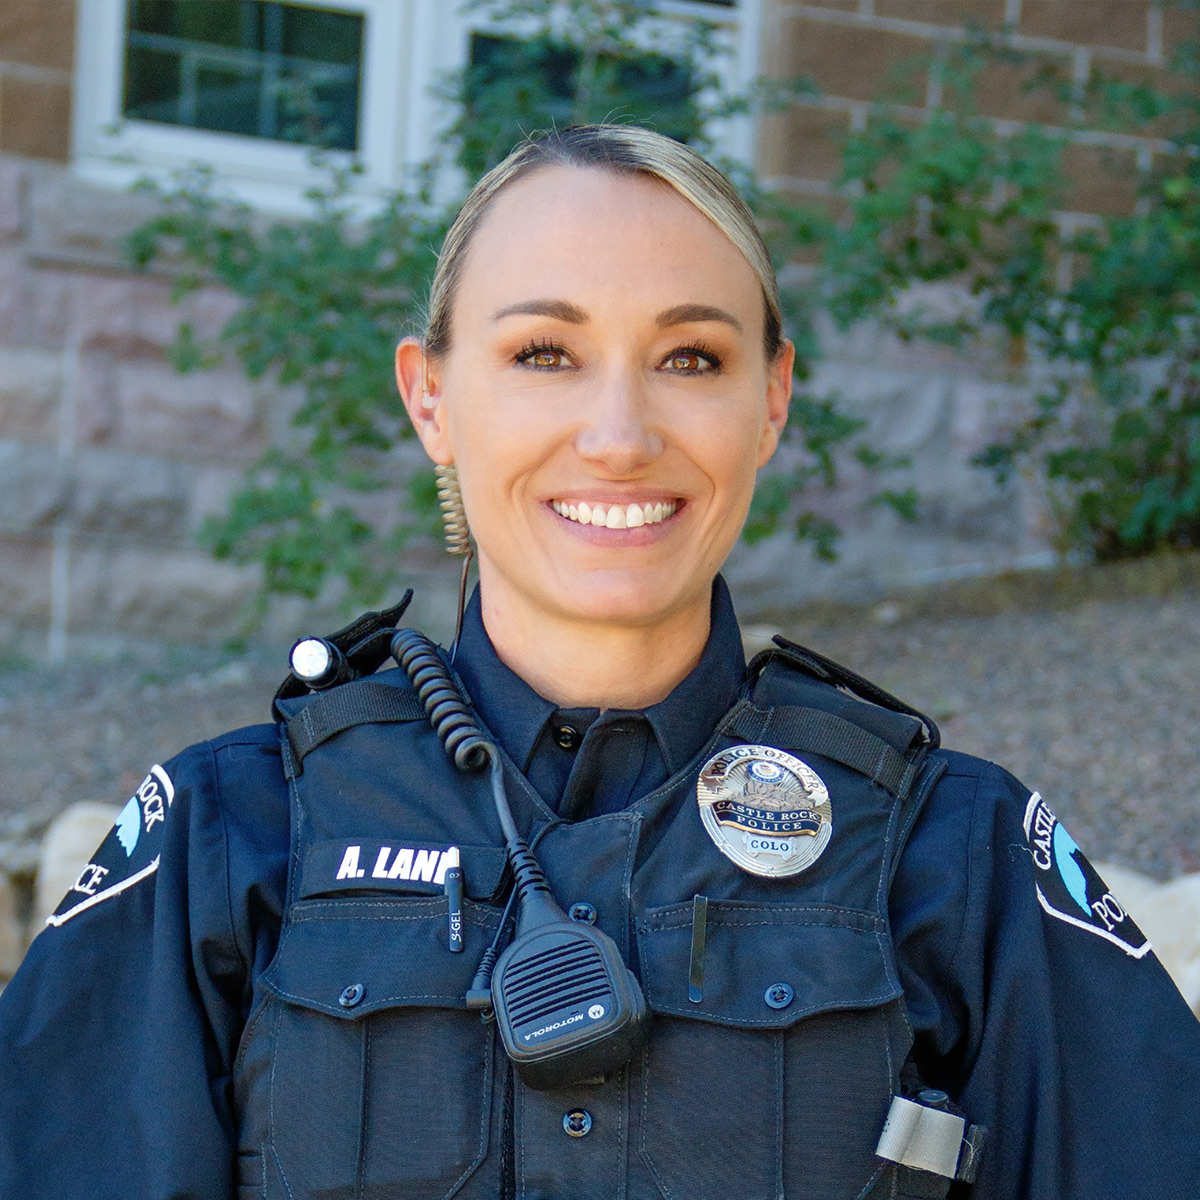 Officer Amanda Lane